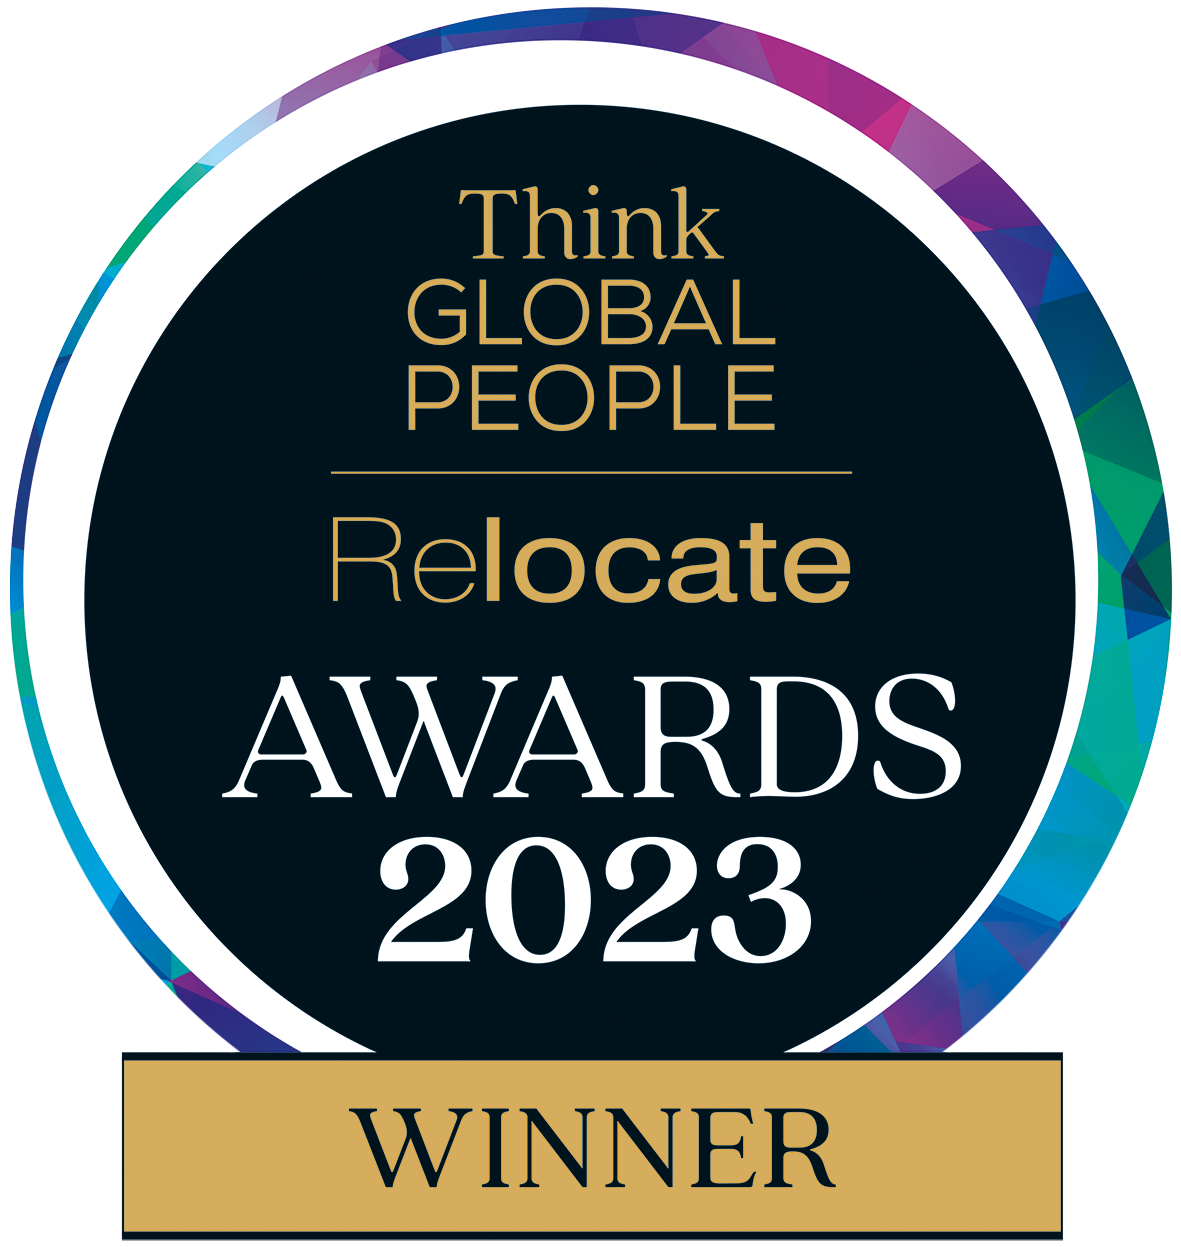 Relocate Awards 2023 logo